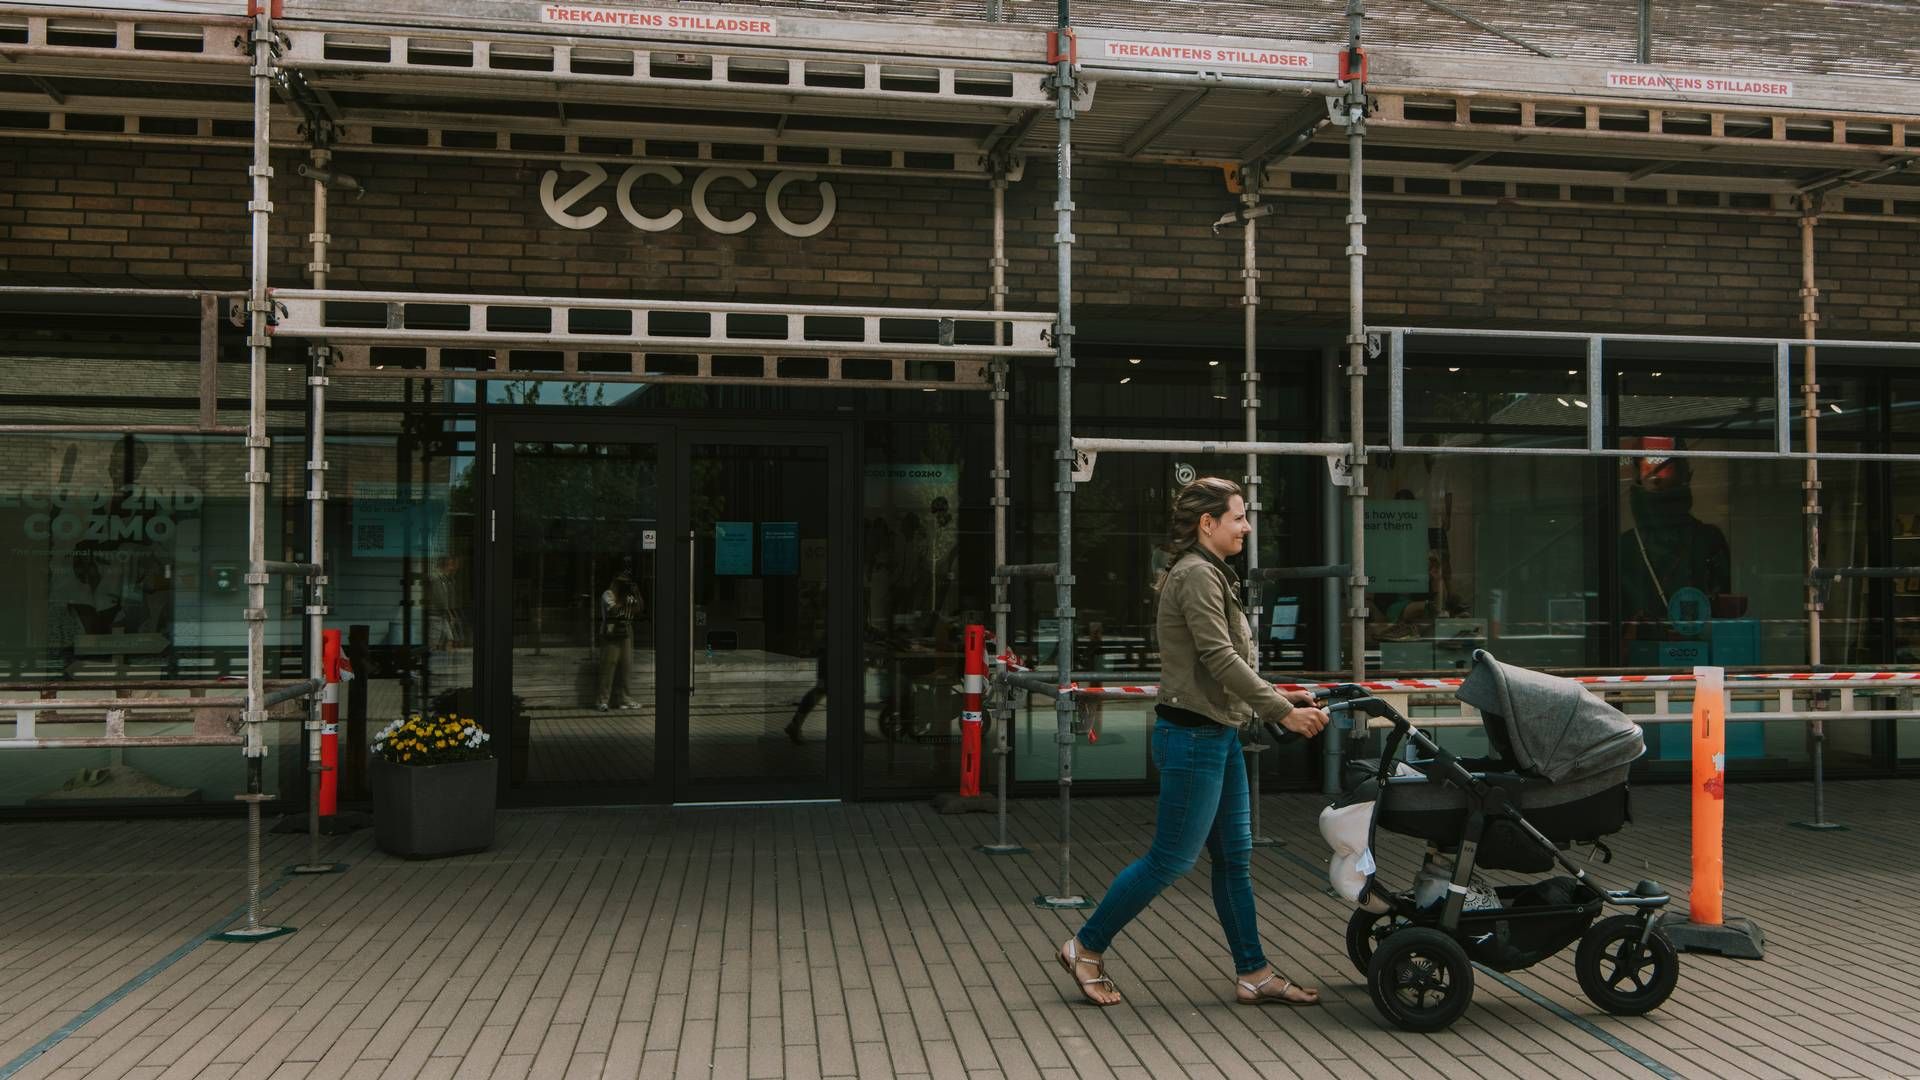 Ecco har salg i omkring 90 lande og har selv over 2.100 butikker globalt. | Foto: Rikke Kjær Poulsen